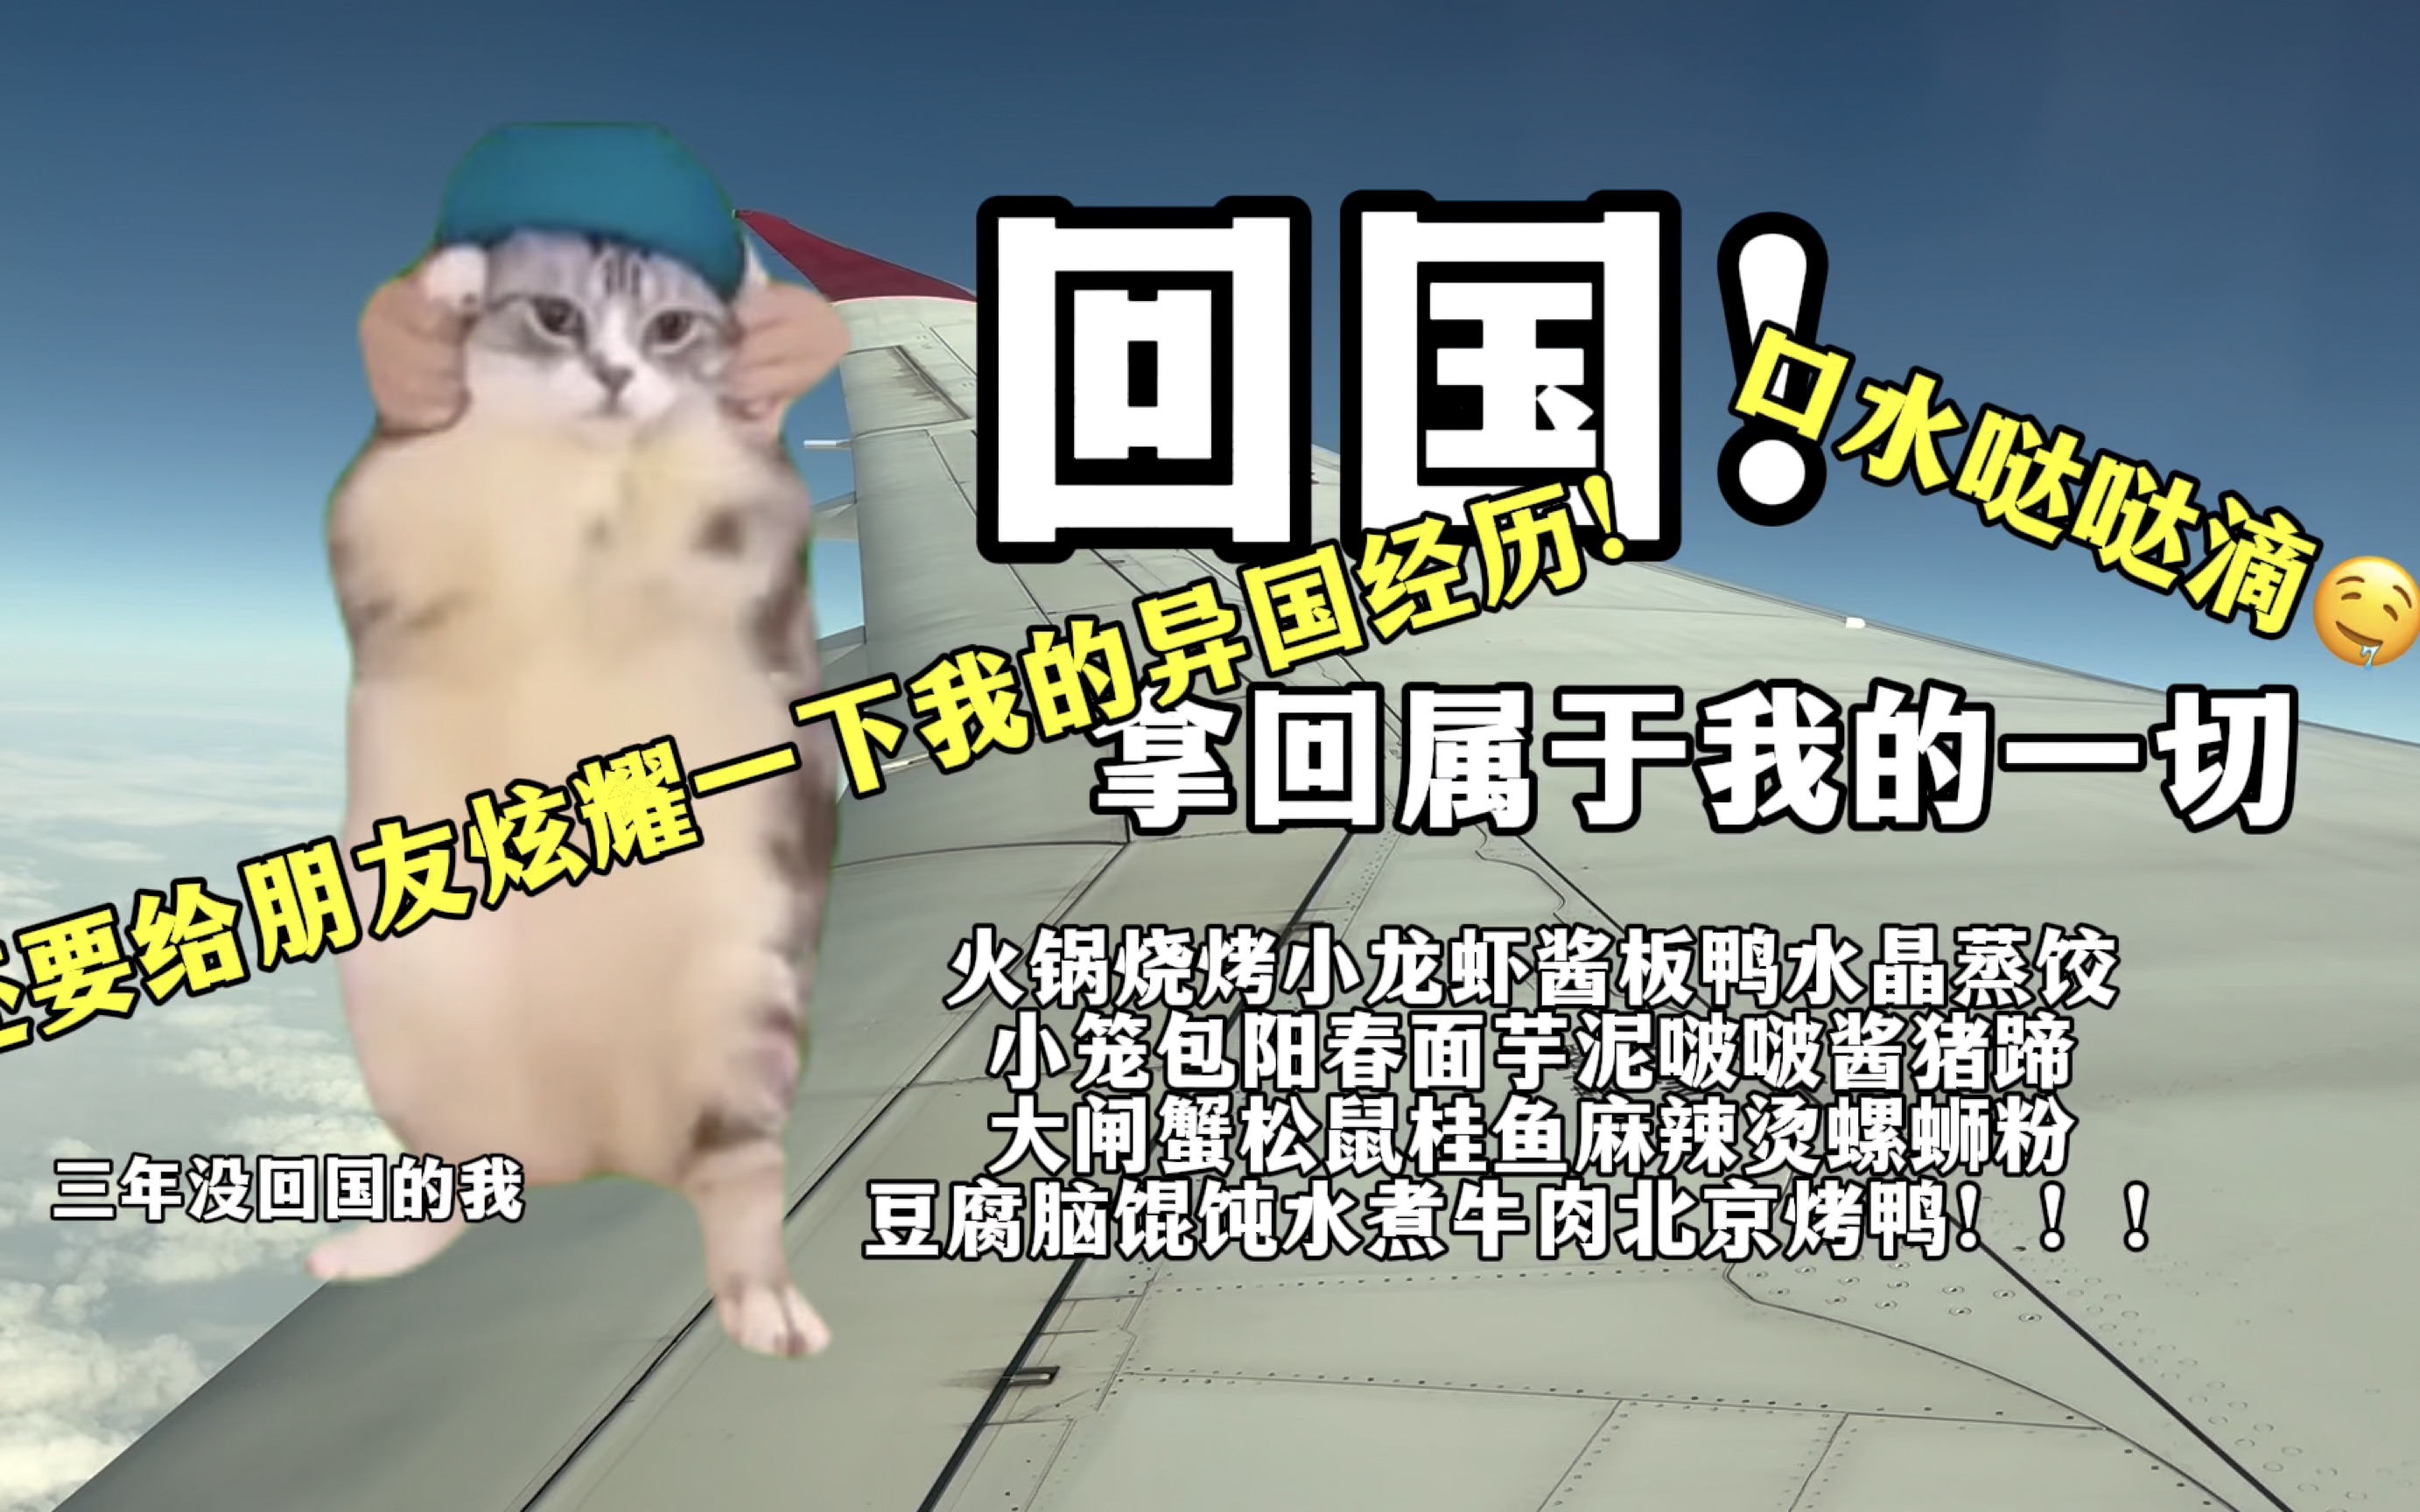 【猫meme】乡巴佬留学生回国记1.0